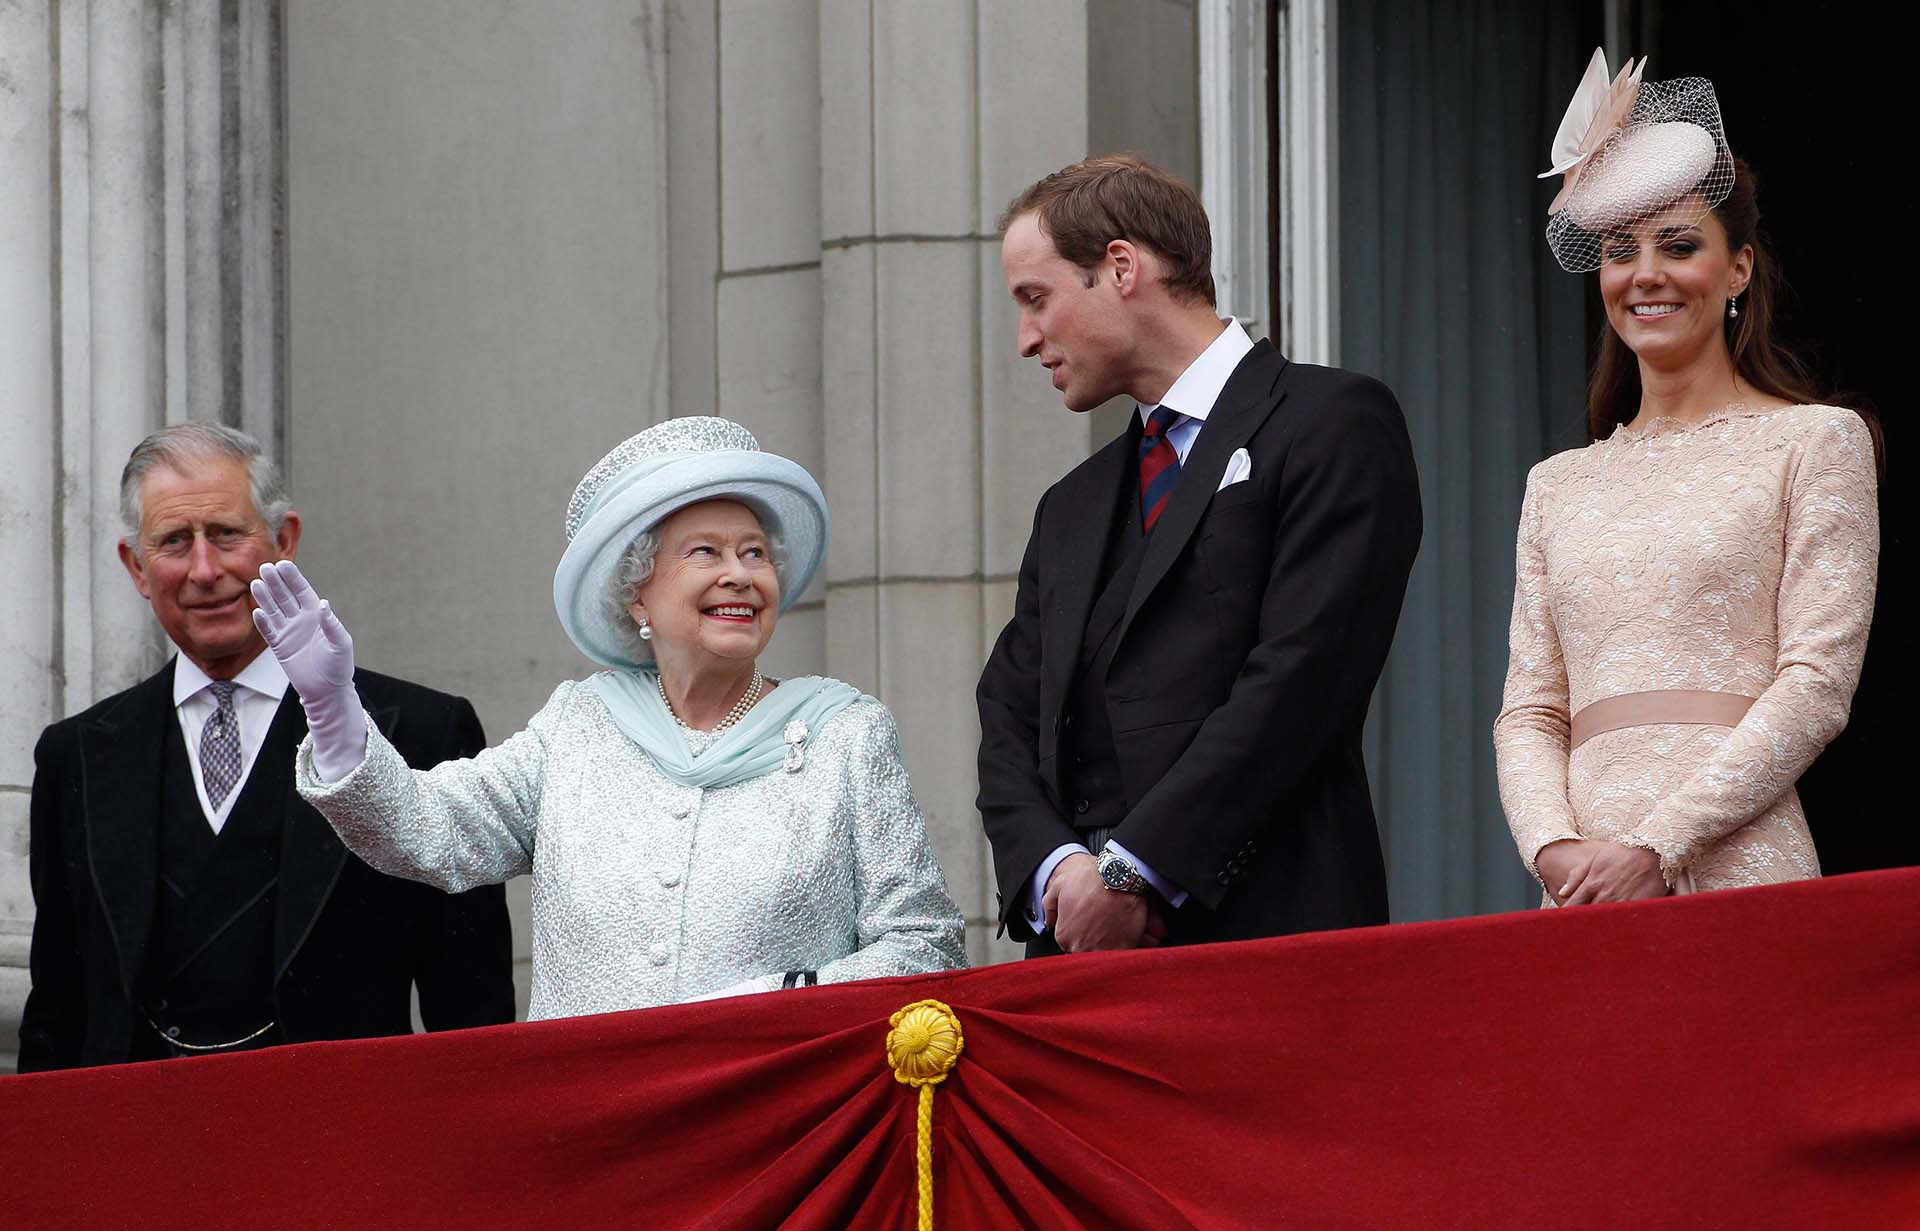 La reina Isabel junto su nieto mayor, el príncipe Guillermo, Kate Middleton y el príncipe Carlos durante la celebración del Jubileo de Diamantes, el 5 de junio de 2012, fecha en la que se festejaron sus 60 años en el trono